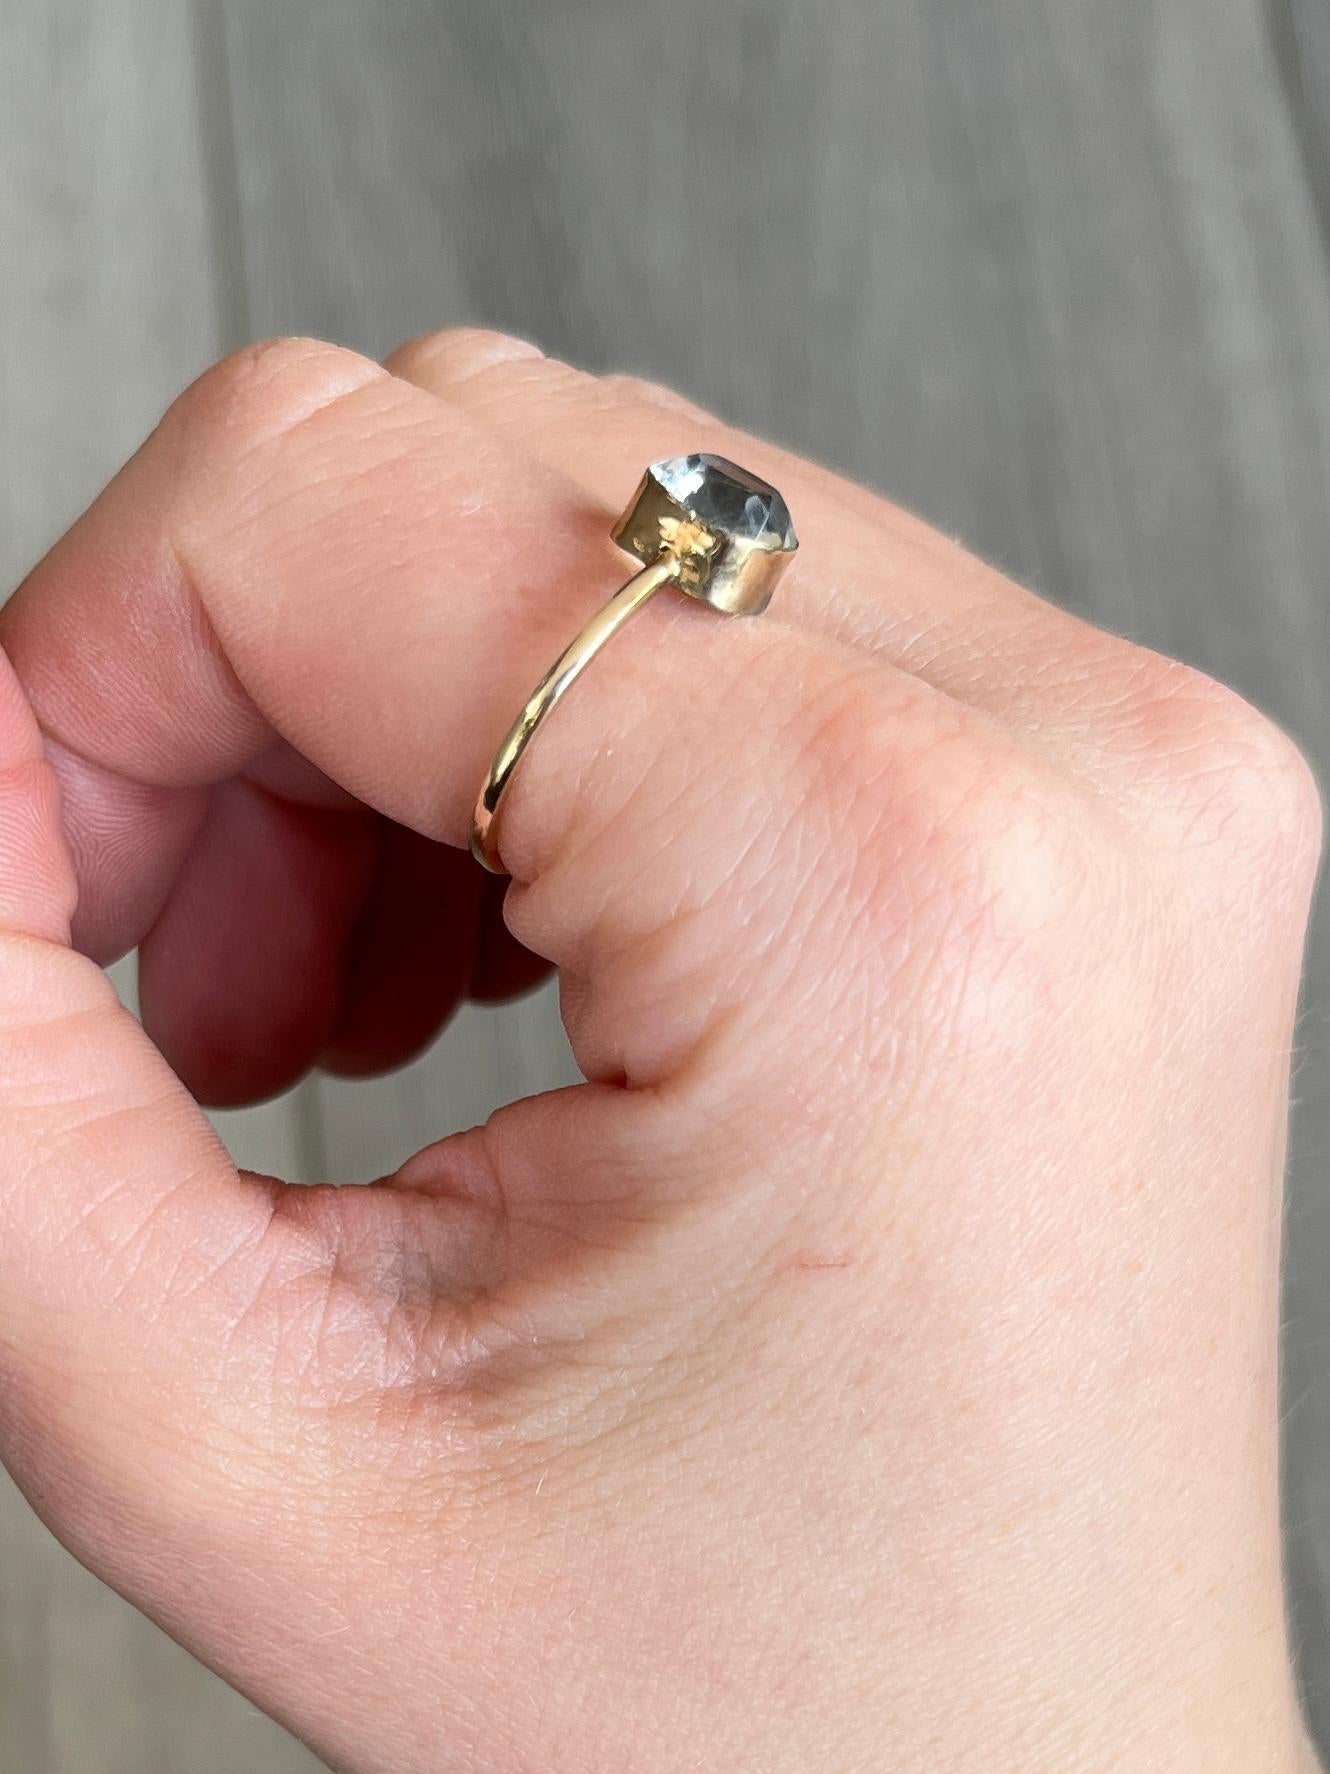 Dieser süße Ring enthält einen leuchtenden, klaren Kristall. Der Ring hat ein einfaches Design und ist aus 9 Karat Gold modelliert. 

Ringgröße: Q 1/2 oder 8 1/4 
Steinstein Abmessungen: 8,5 x 7 mm

Gewicht: 1,6 g